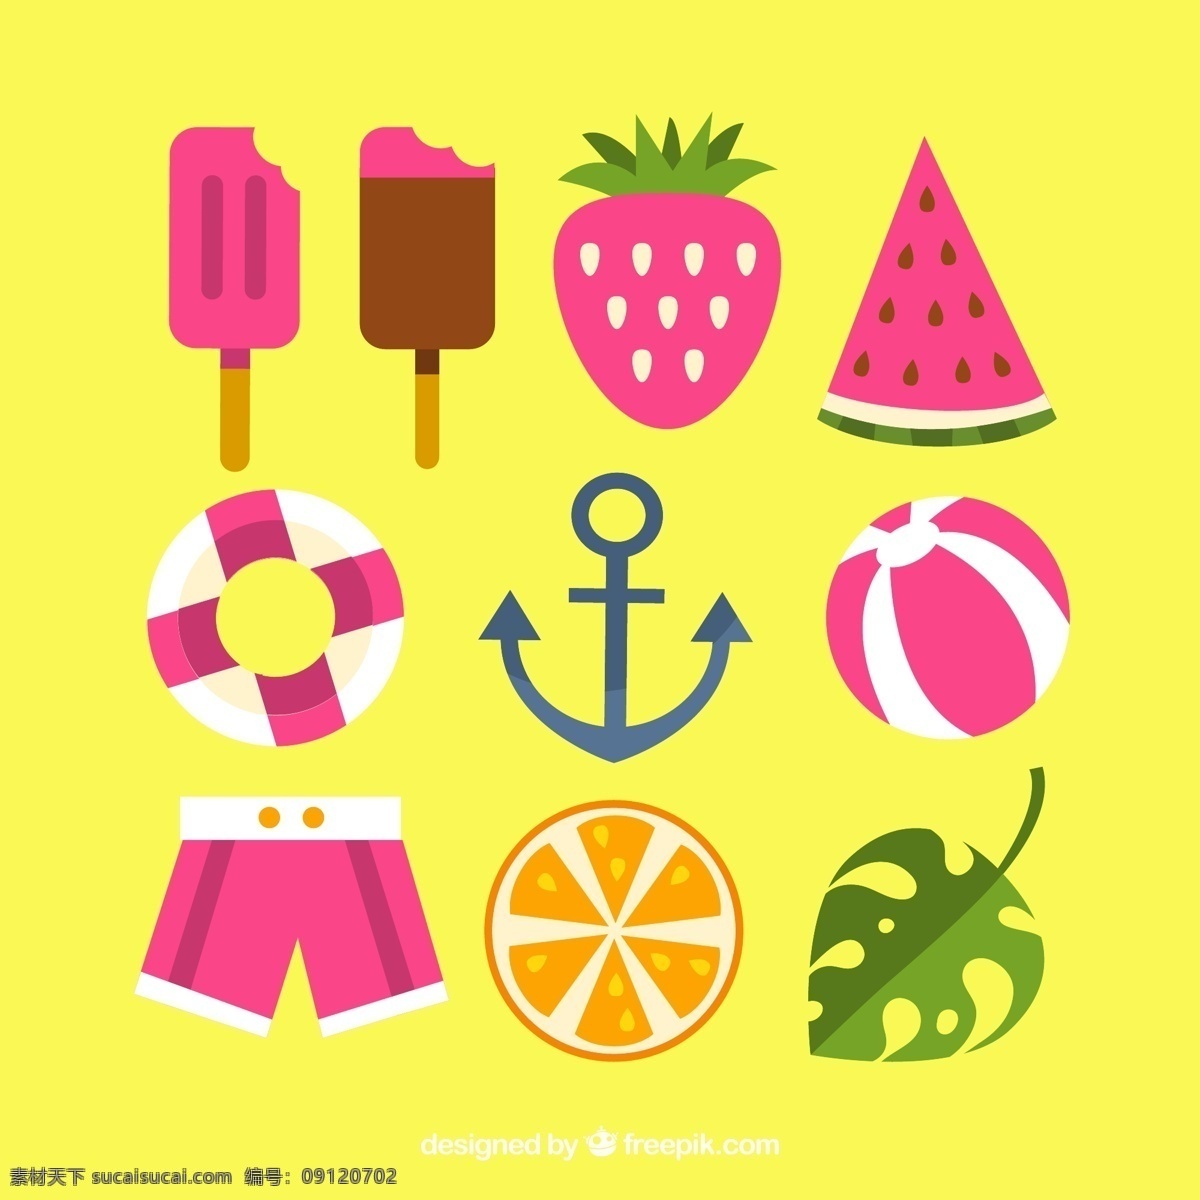 款 彩色 夏季 元素 矢量 雪糕 草莓 西瓜 救生圈 船锚 沙滩球 沙滩裤 柠檬 龟背竹叶 旅行 度假 标志图标 其他图标